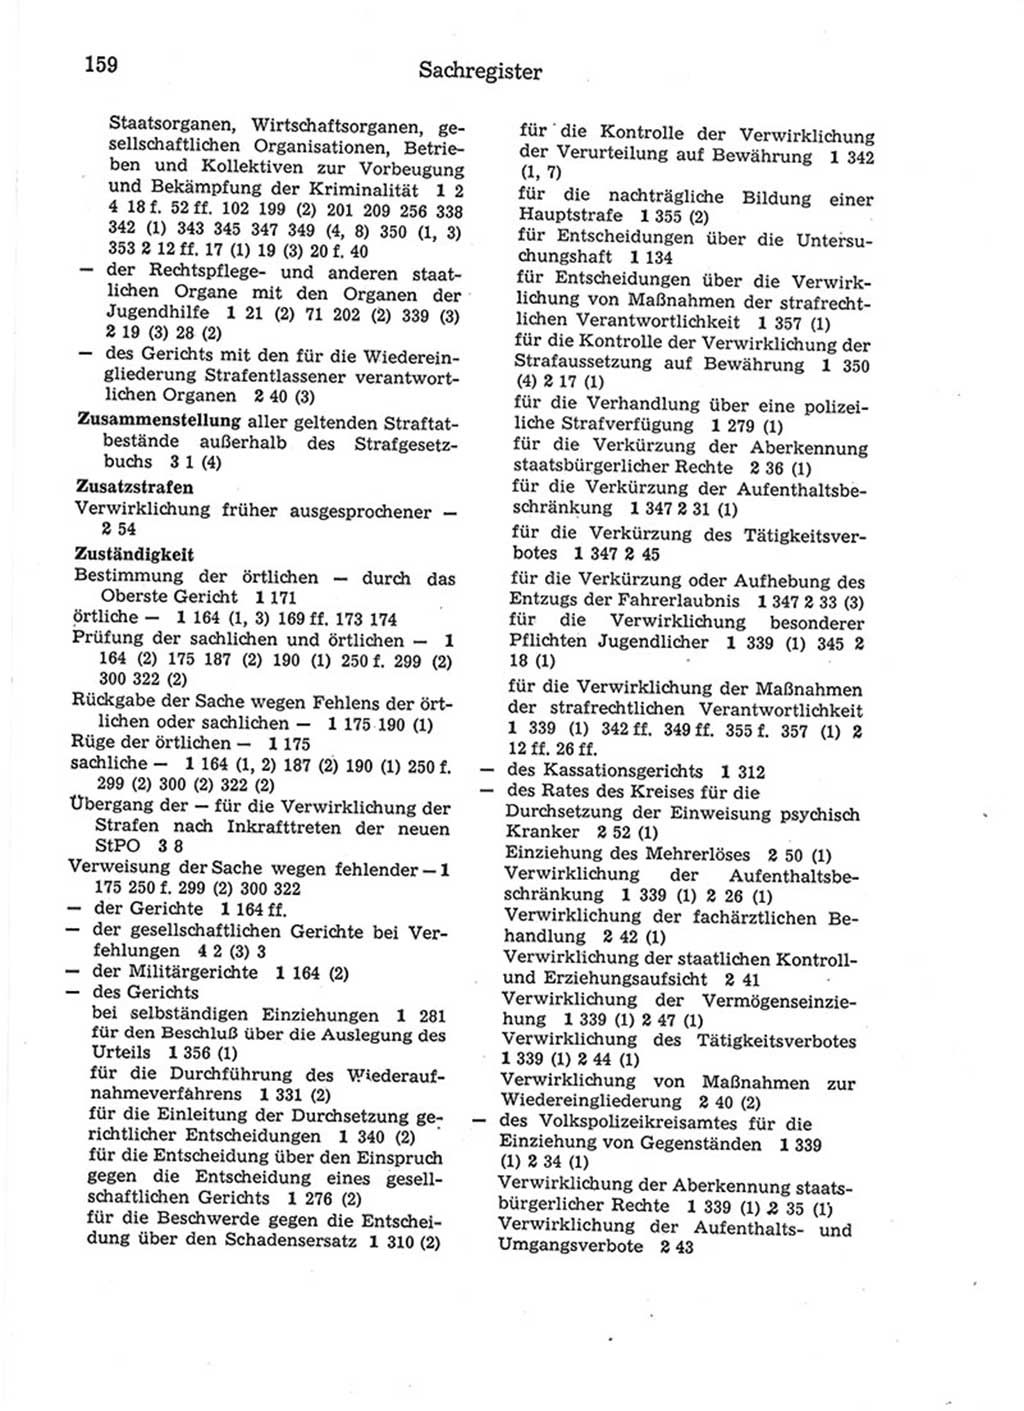 Strafprozeßordnung (StPO) der Deutschen Demokratischen Republik (DDR) 1975, Seite 159 (StPO DDR 1974, S. 159)